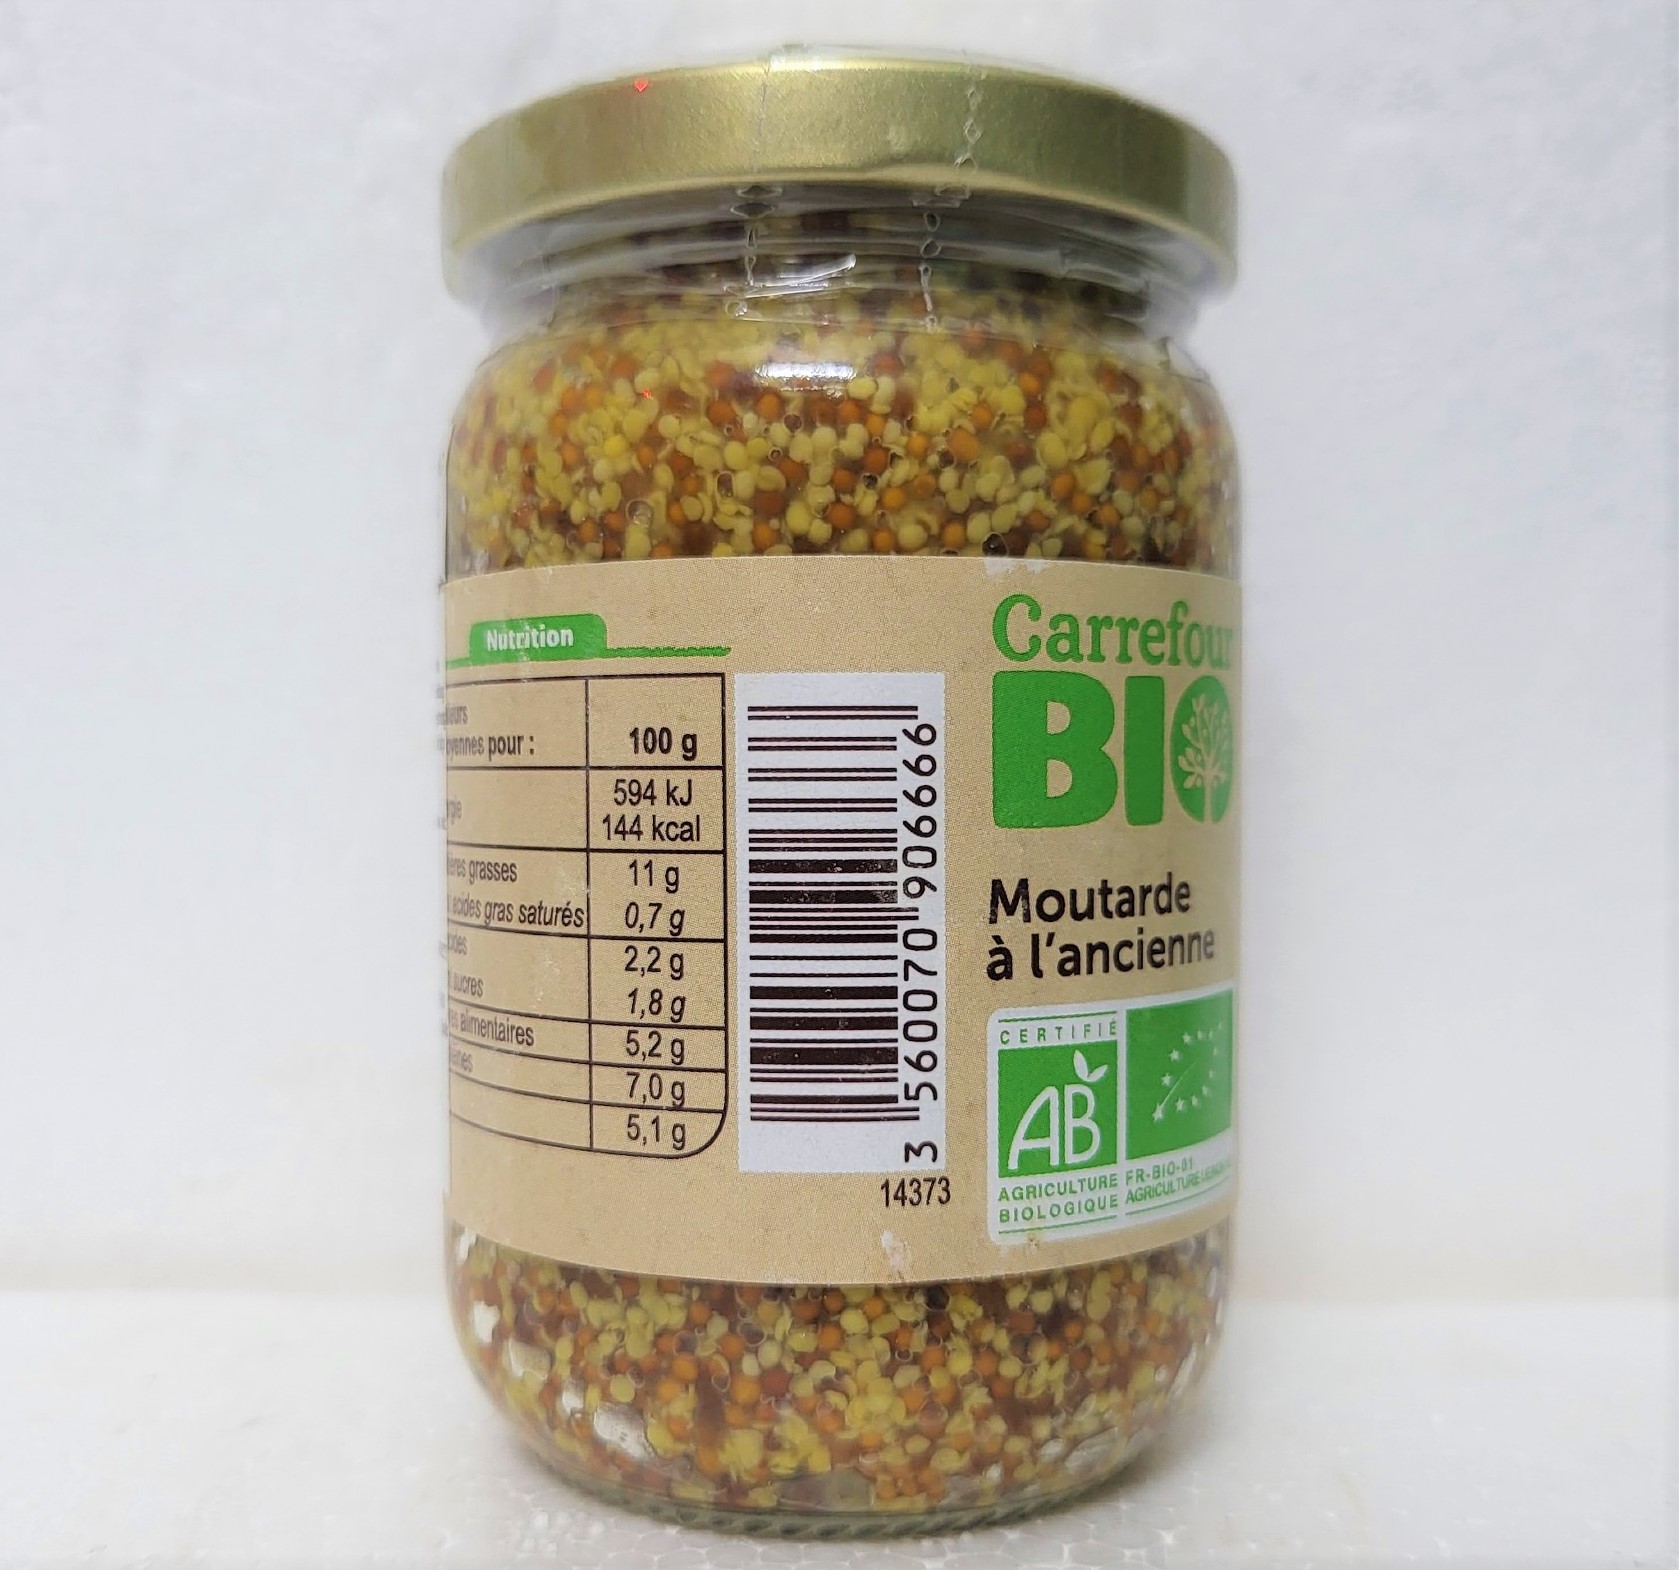 [lọ 200g hạt] [organic] mù tạt nguyên hạt hữu cơ [france] carrefour bio wholegrain mustard (atp) 5